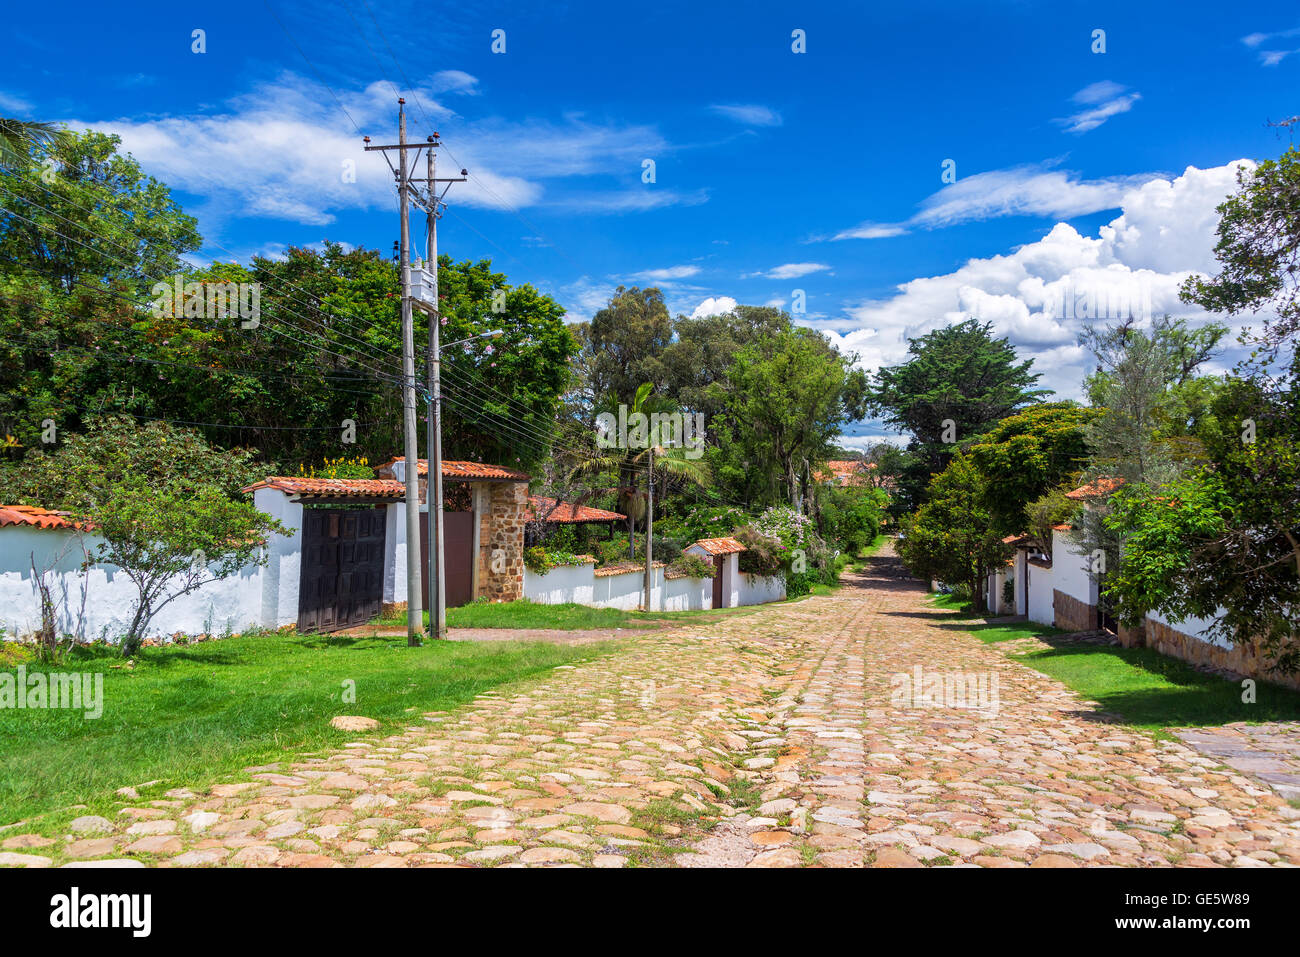 Gepflasterte Straße in einem ruhigen Viertel von Villa de Leyva, Kolumbien Stockfoto